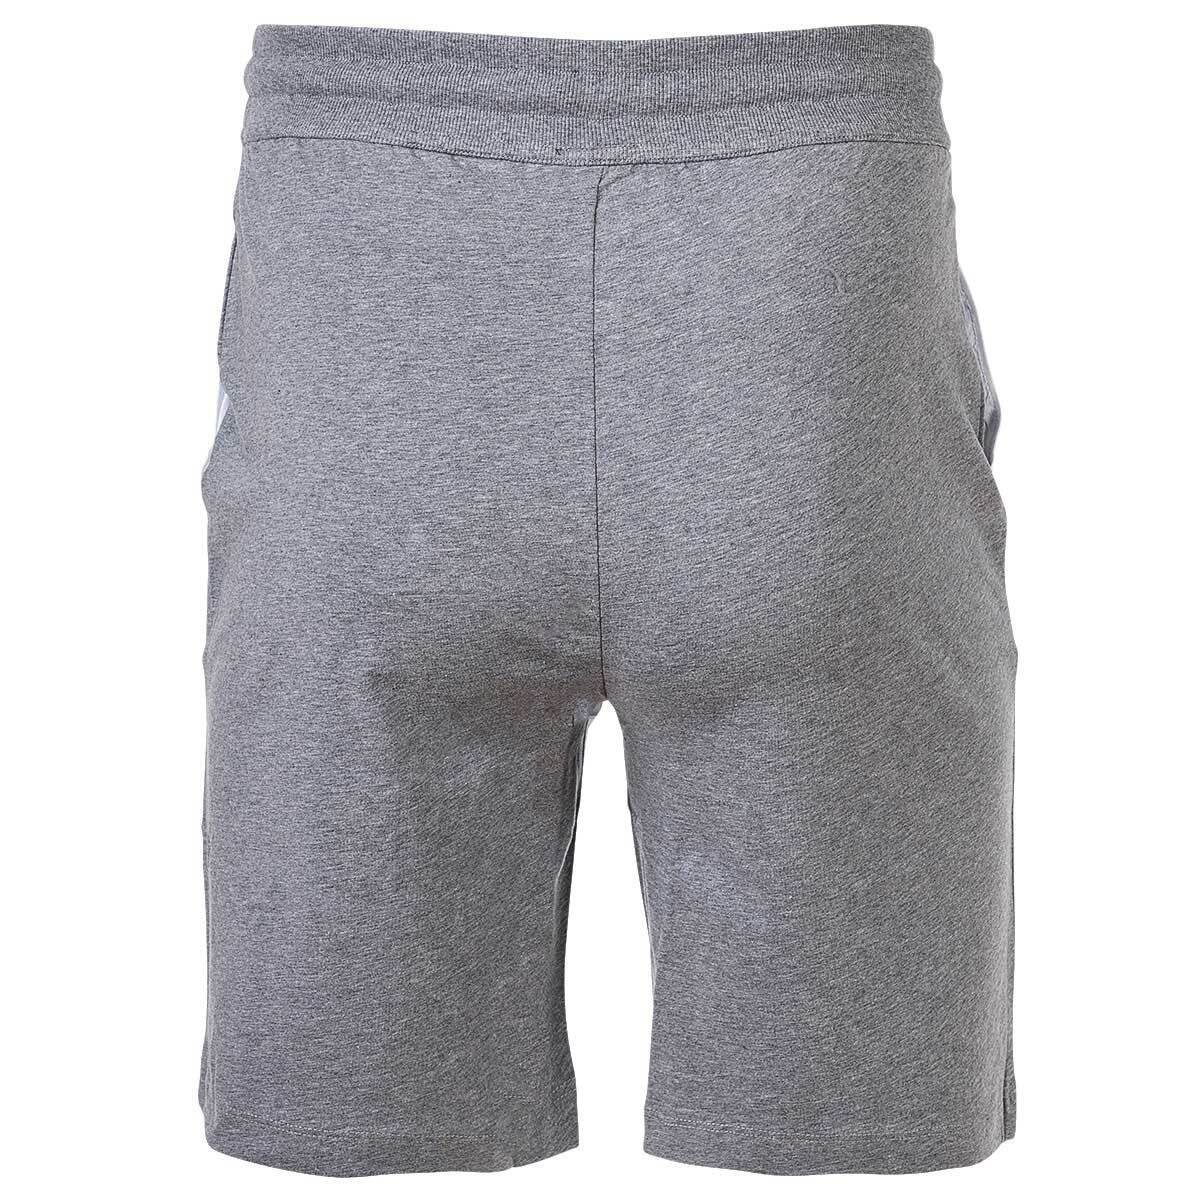 Joop! Sweatshorts Herren - Grau Jersey-Shorts Jogginghose Loungewear